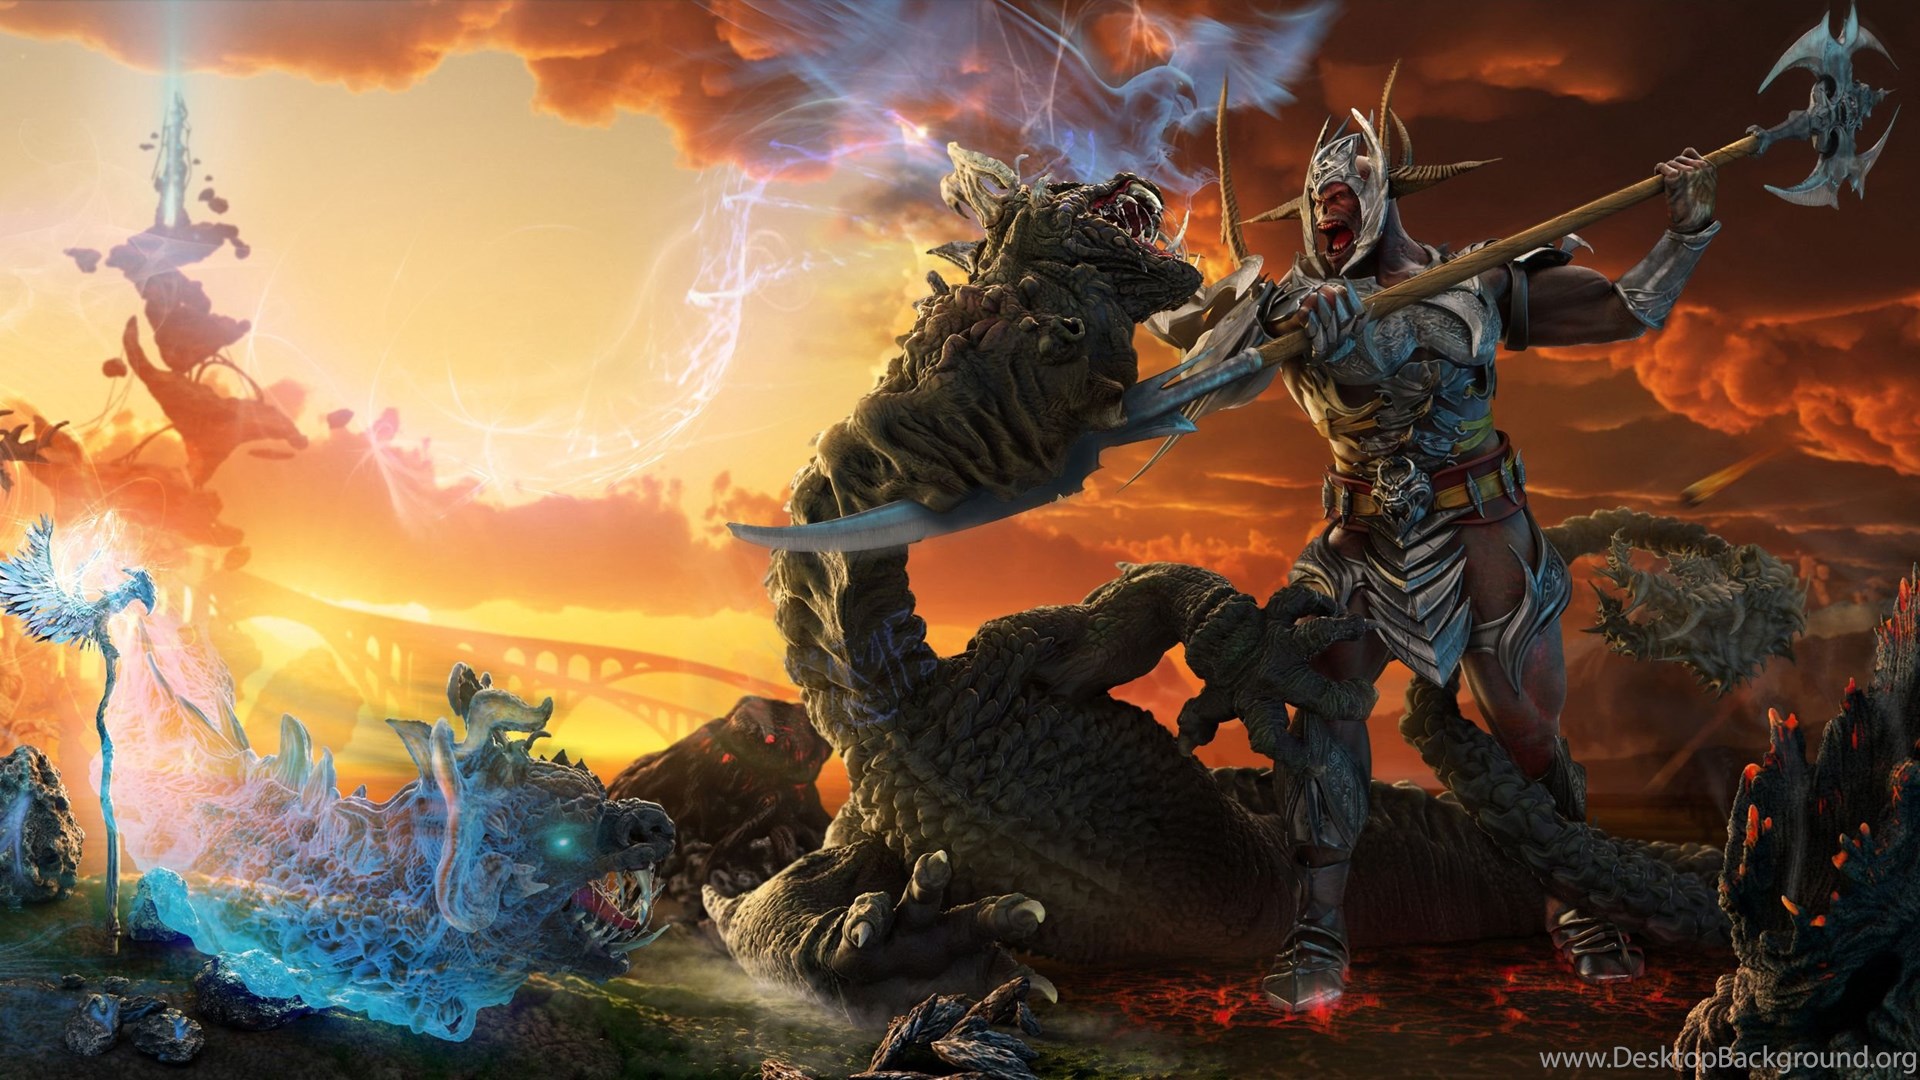 Warhammer Fantasy Battle (id: 175399)